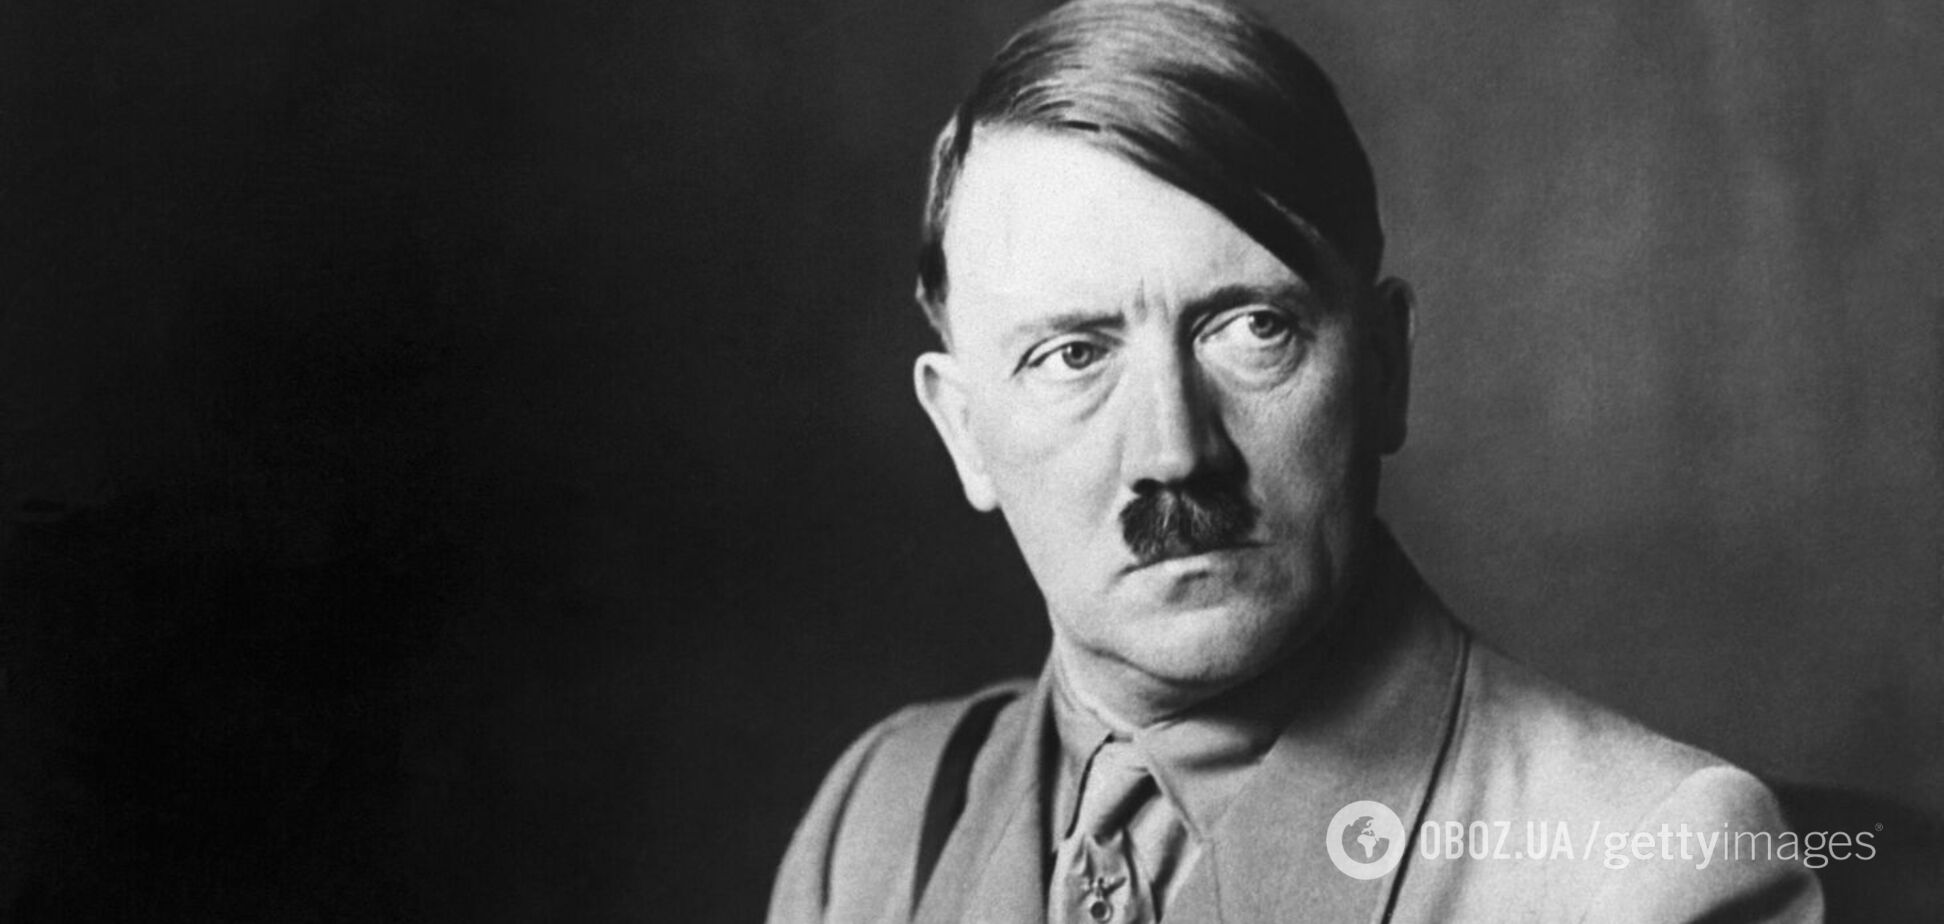 Гитлер обожал животных, употреблял наркотики и был импотентом. 10 шокирующих фактов об одном из самых жестоких палачей мира